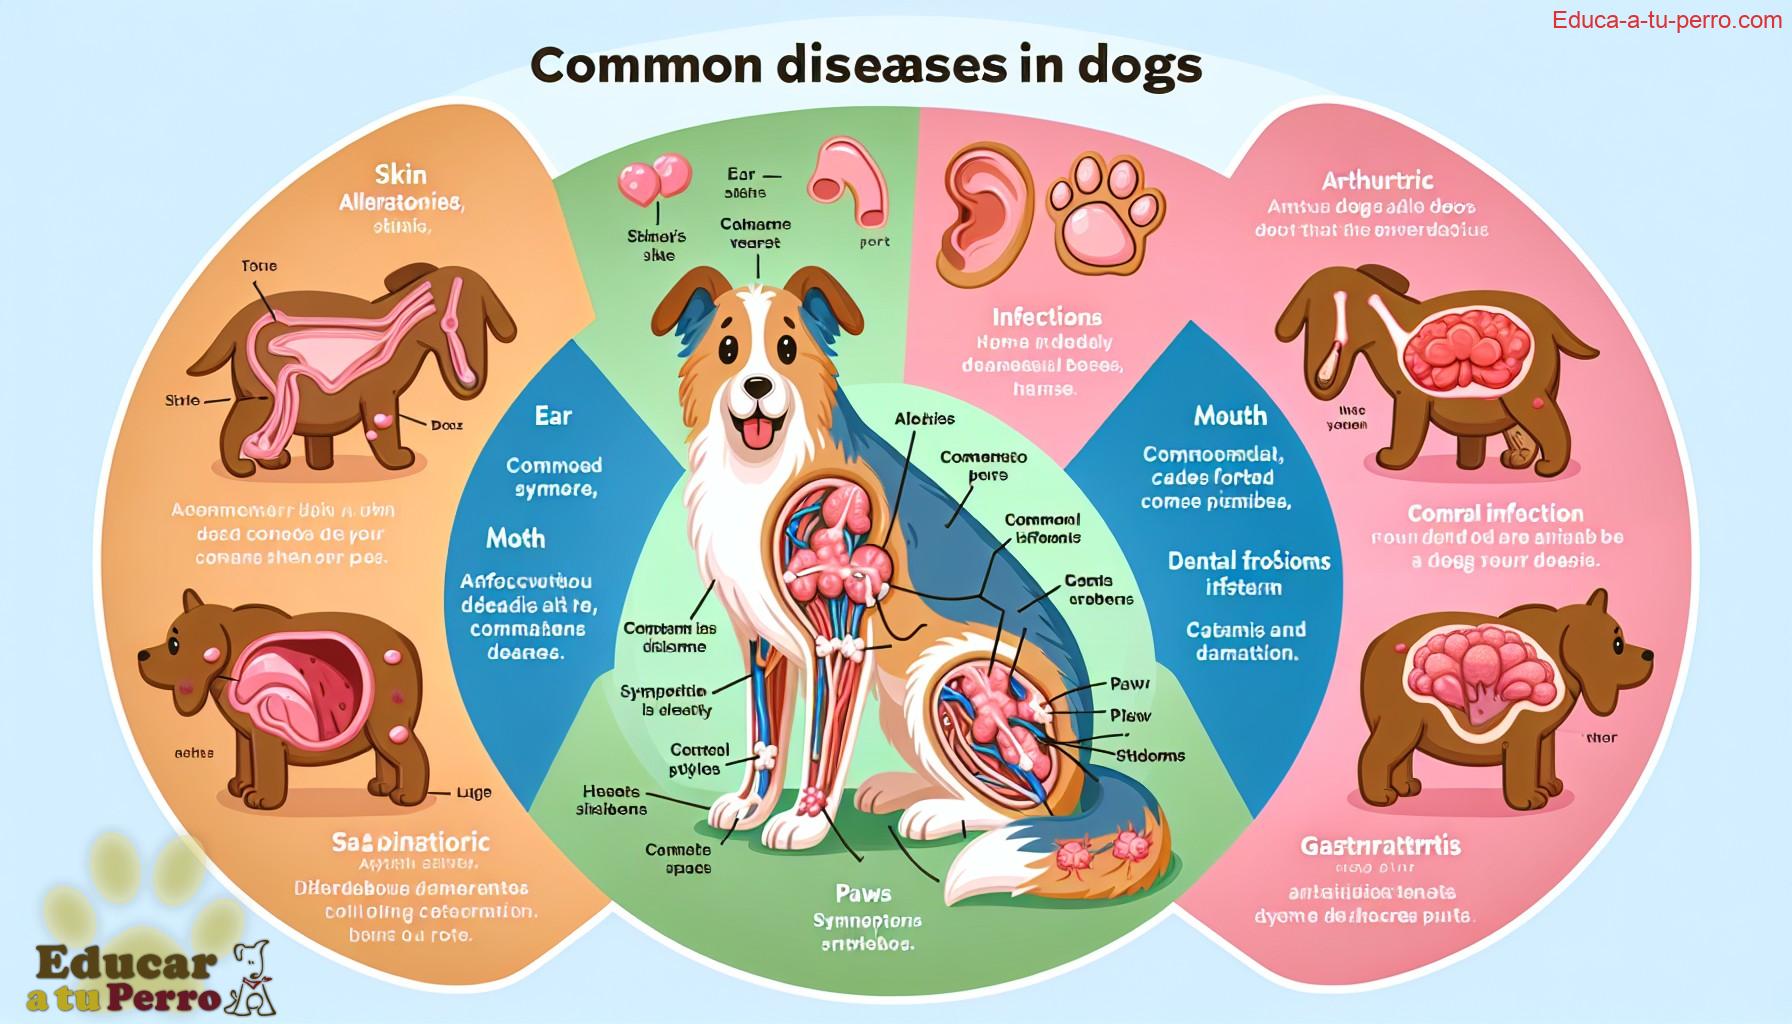 enfermedades del perro - Enfermedades del perro